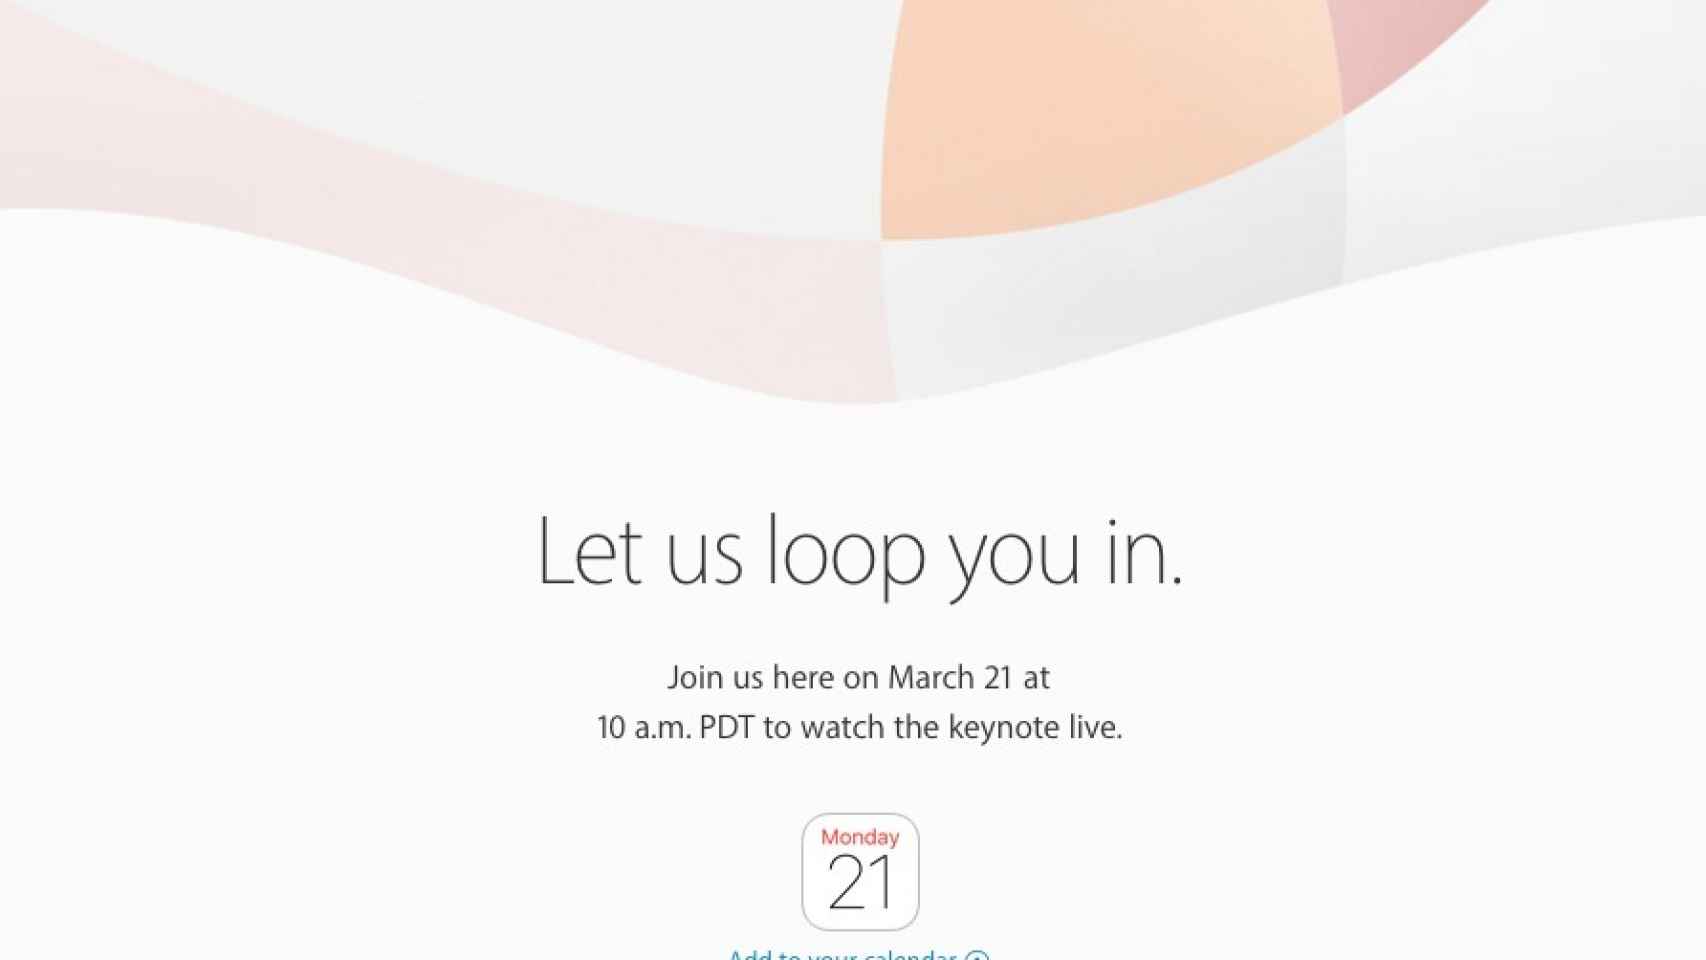 Invitación a la keynote de Apple.